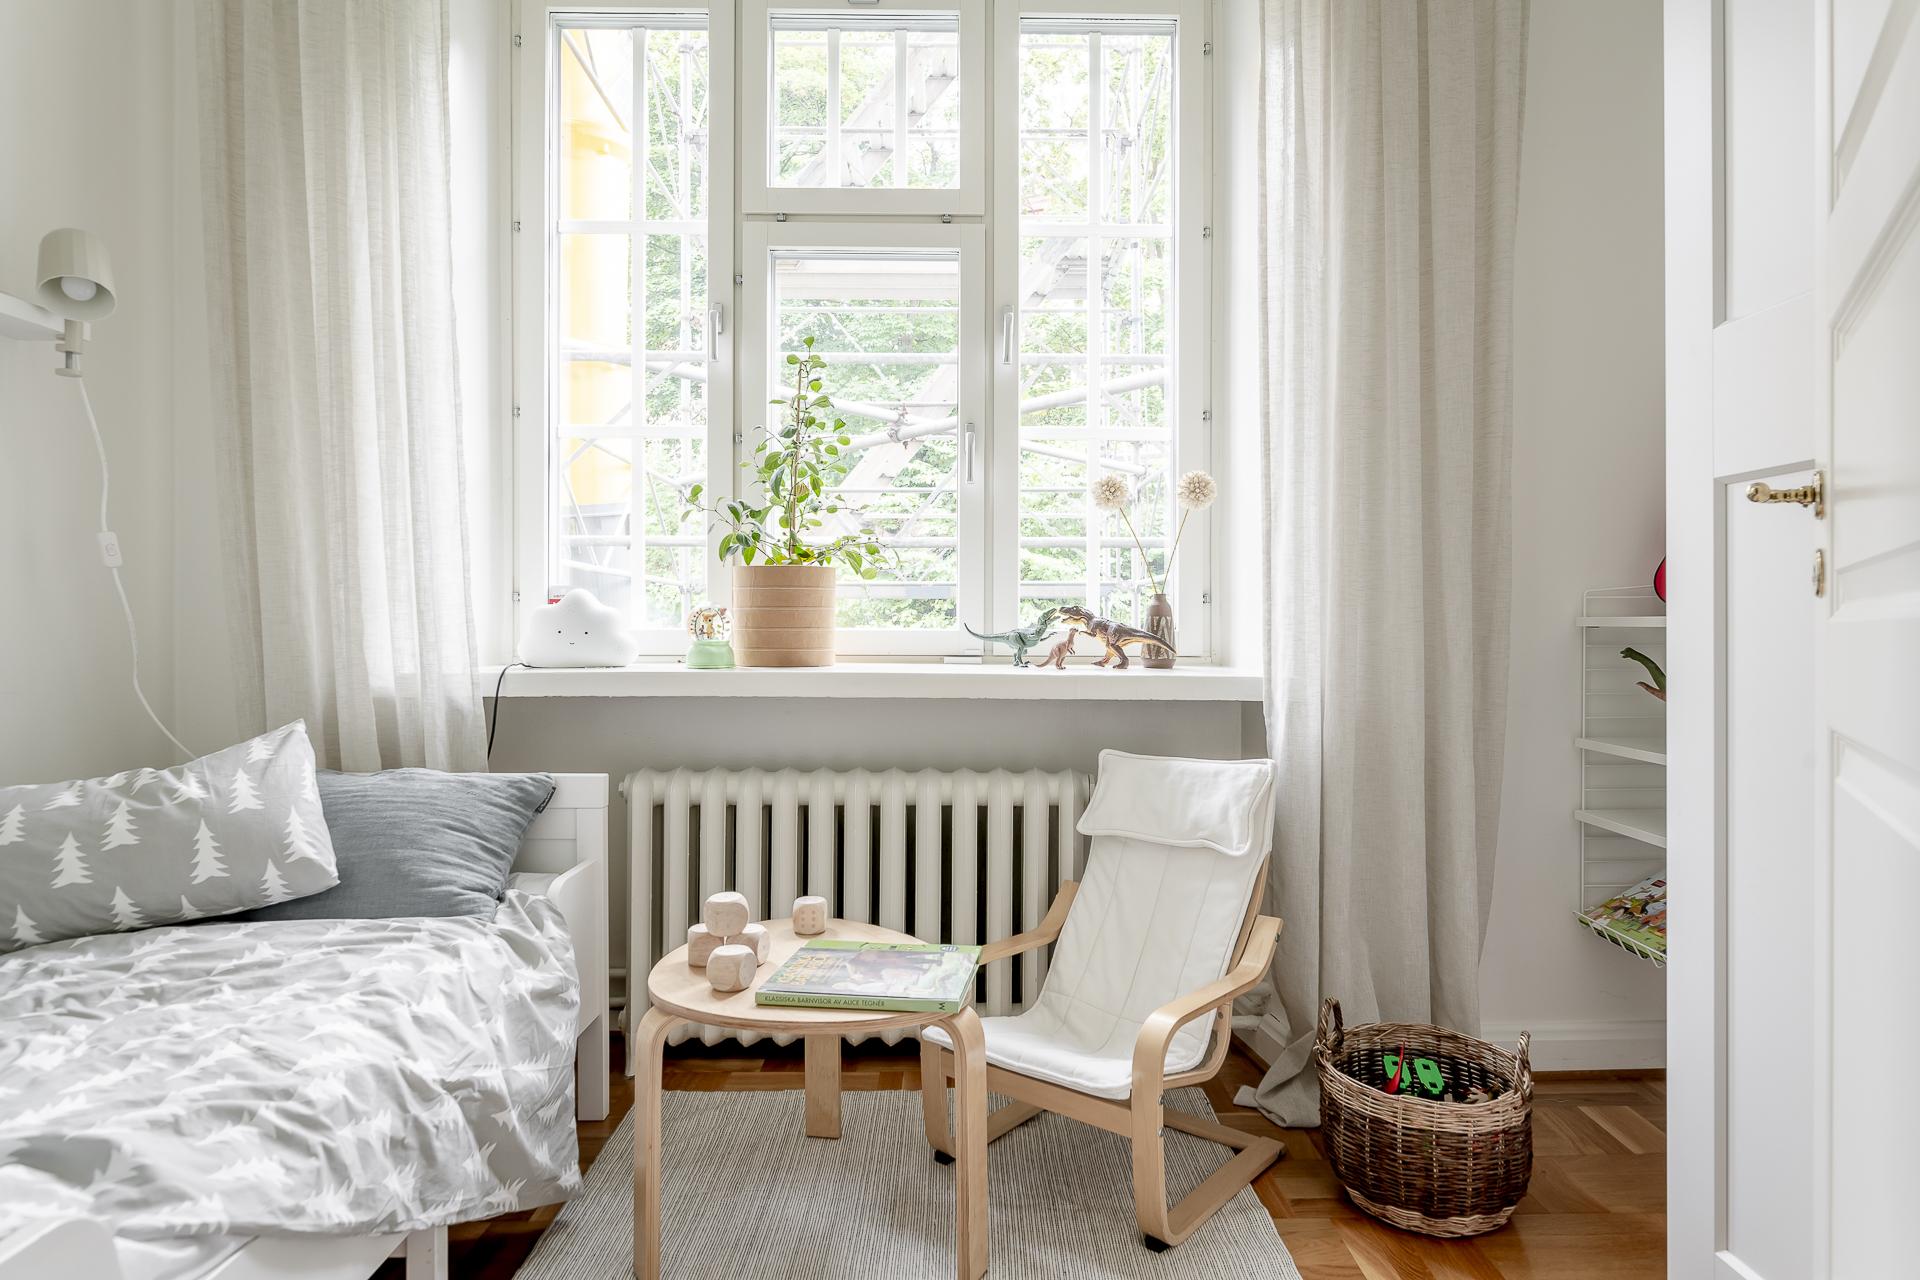 公寓設計,公寓設計案例,瑞典,60㎡,Alvhem,小公寓設計案例,公寓裝修,北歐風格,最小宅,白色+米色